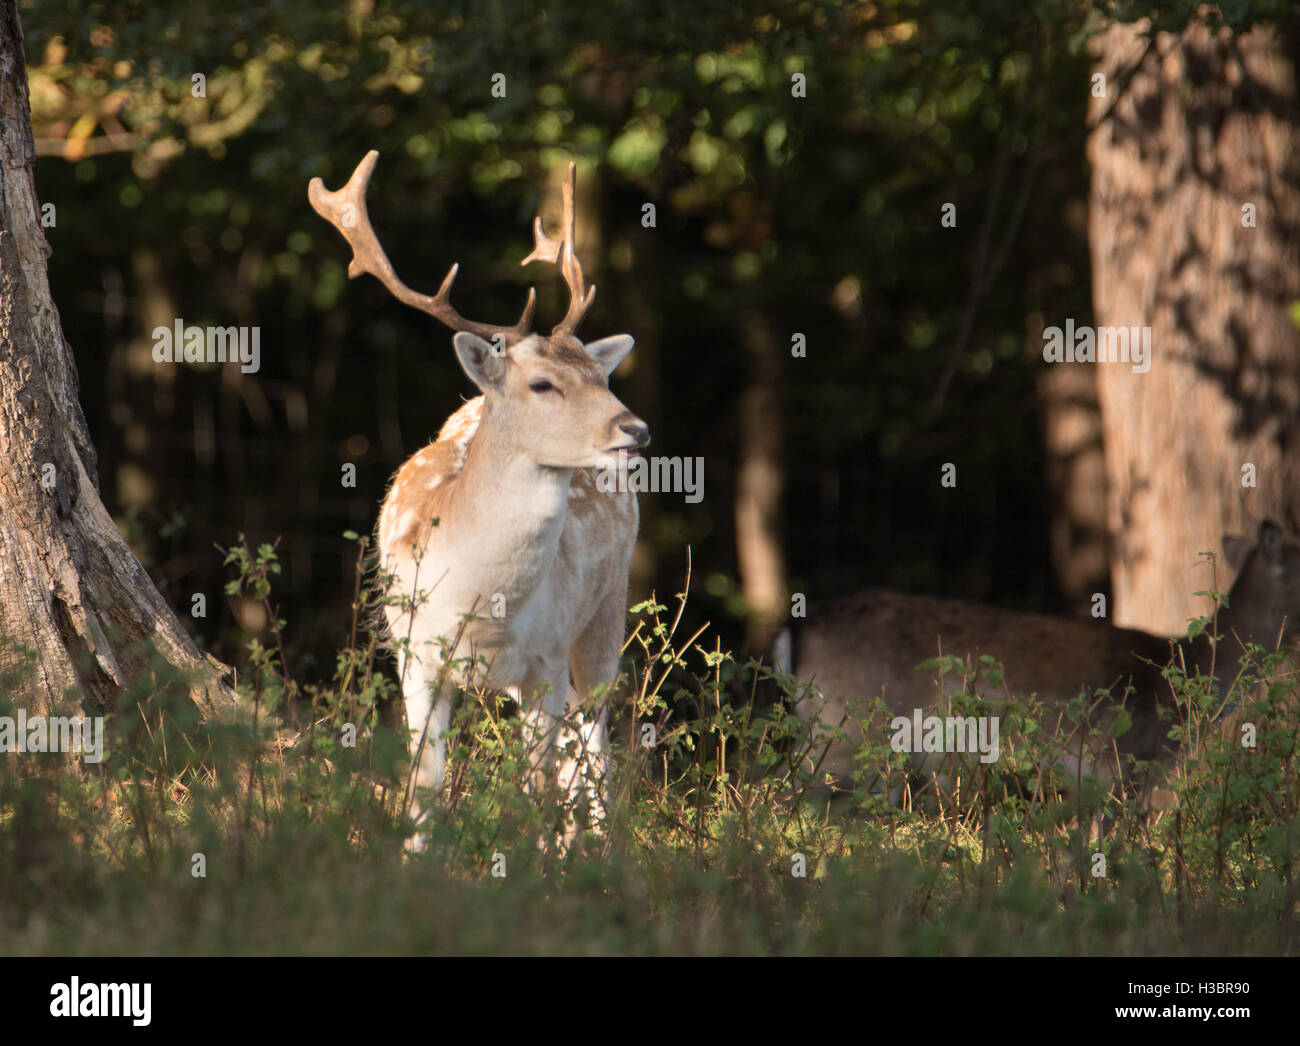 Deer in Weald Park, Brentwood, Essex Stock Photo